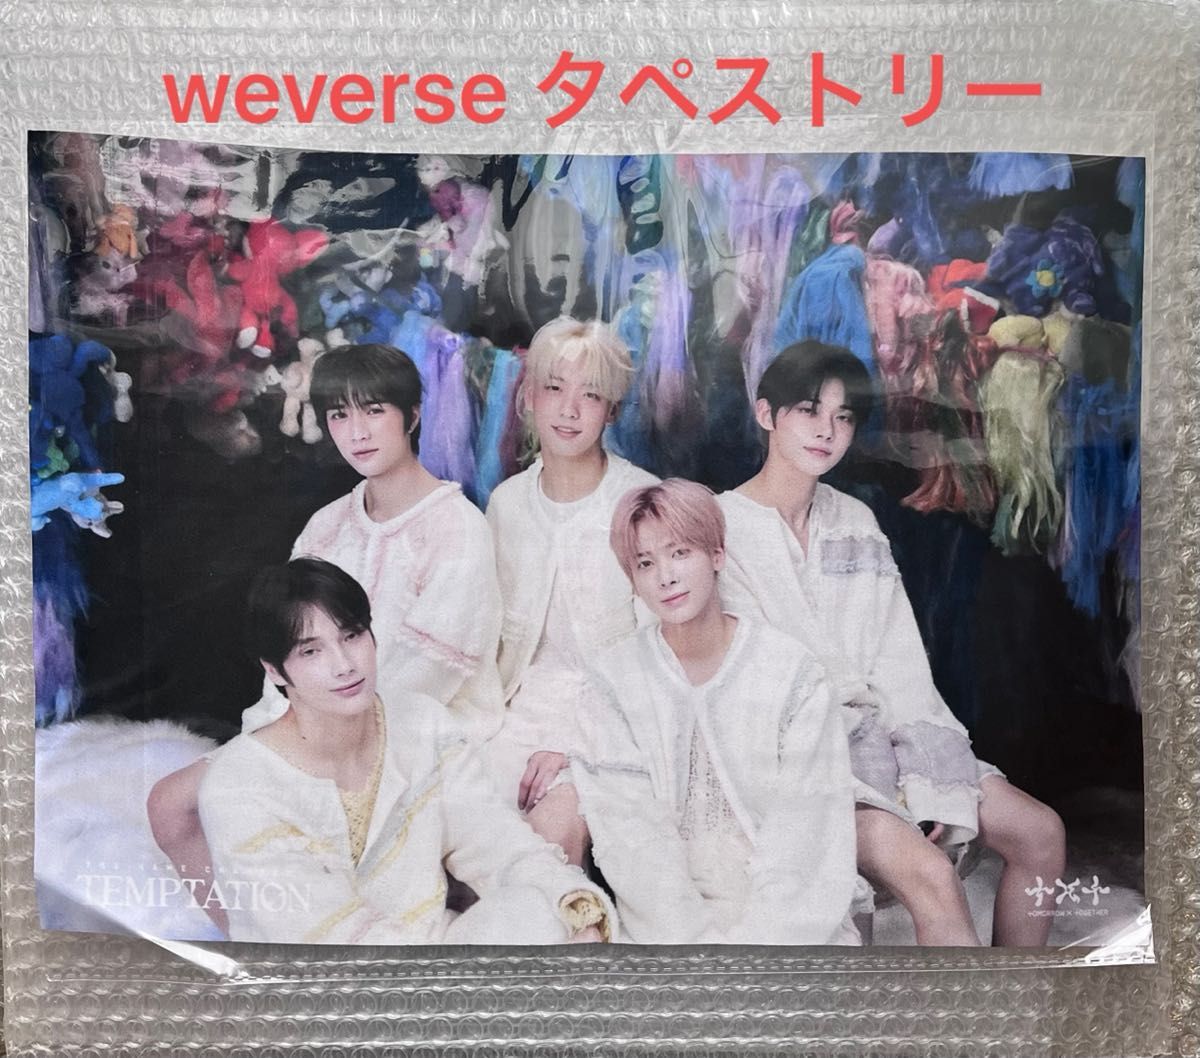 新版 TXT トレカ weverse JAPAN TEMPTATION アルバム superior-quality